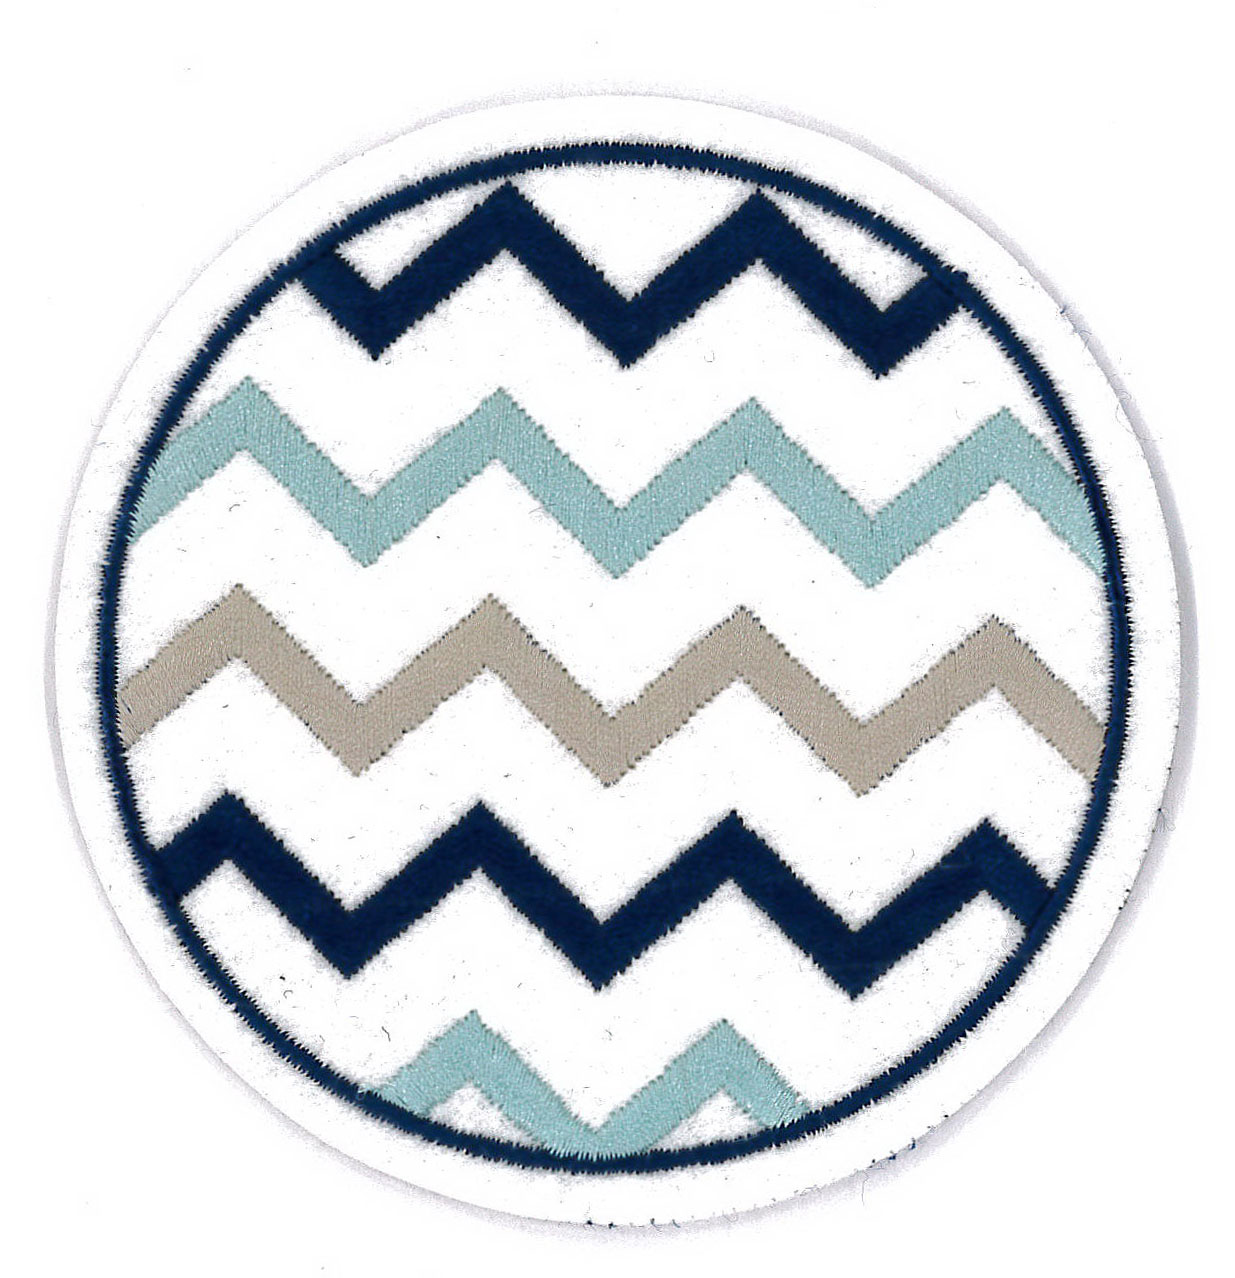 Embroidered Emblem-Coaster